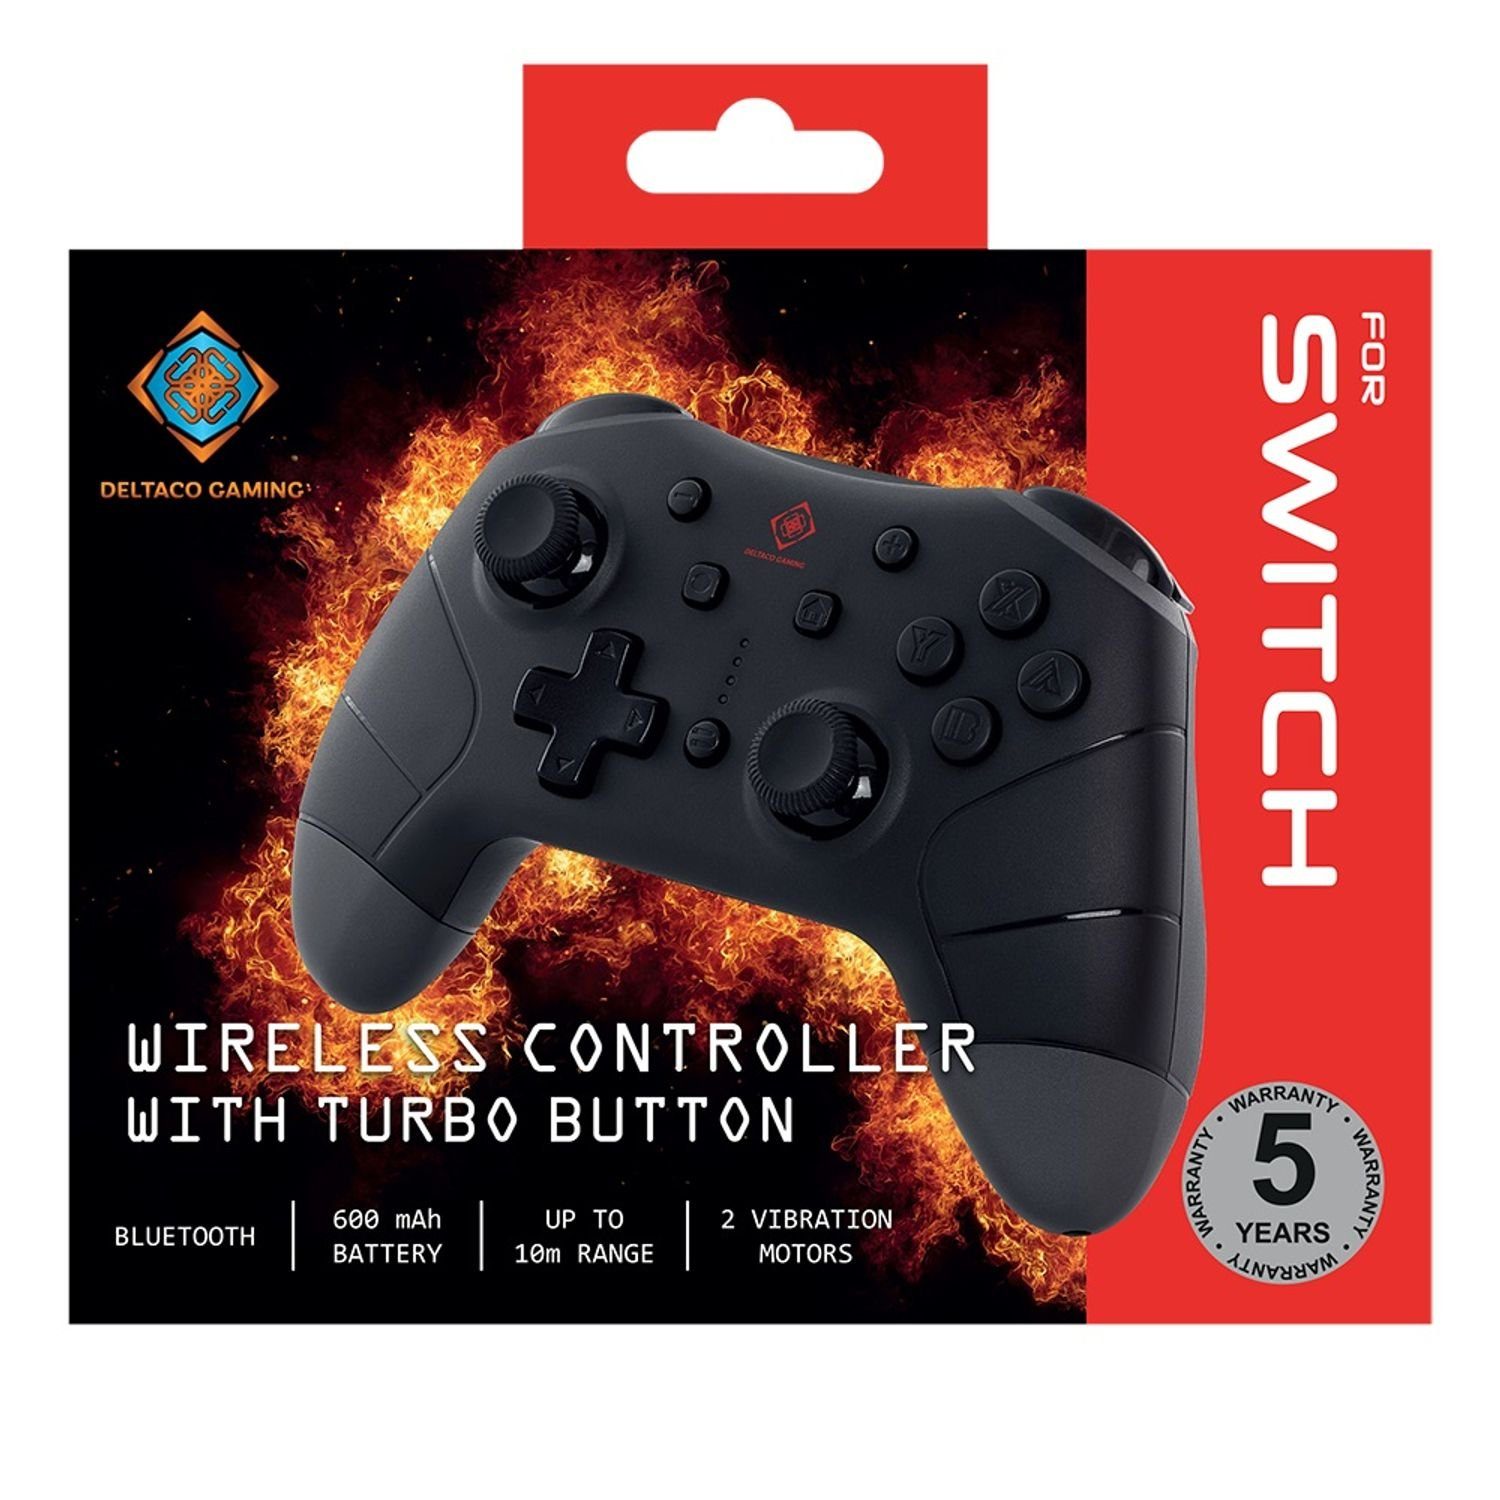 GAMING Nintendo (inkl. ABS-Kunststoff Herstellergarantie) Gaming-Controller Switch Jahre schwarz Controller DELTACO Gamepad-Steuerung 5